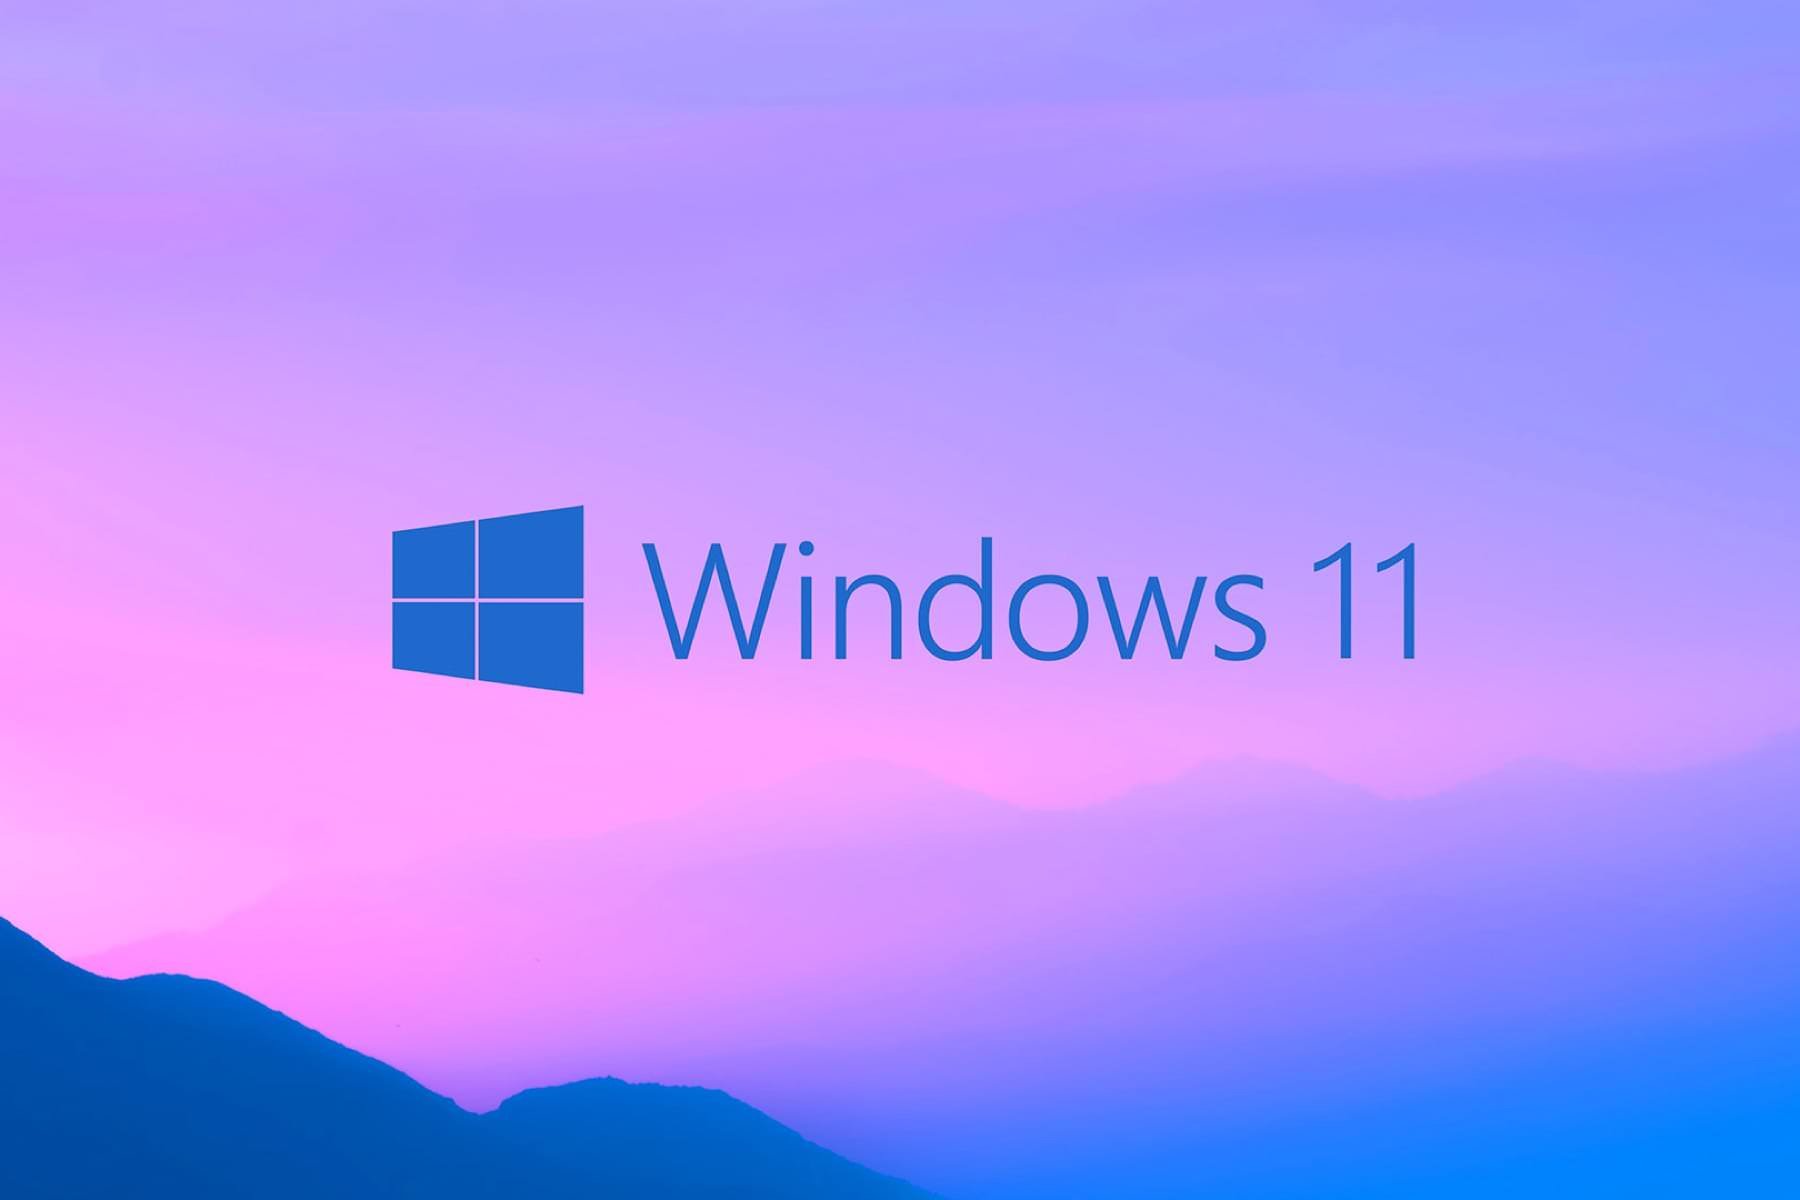 Windows 11 избавят от предустановленных программ